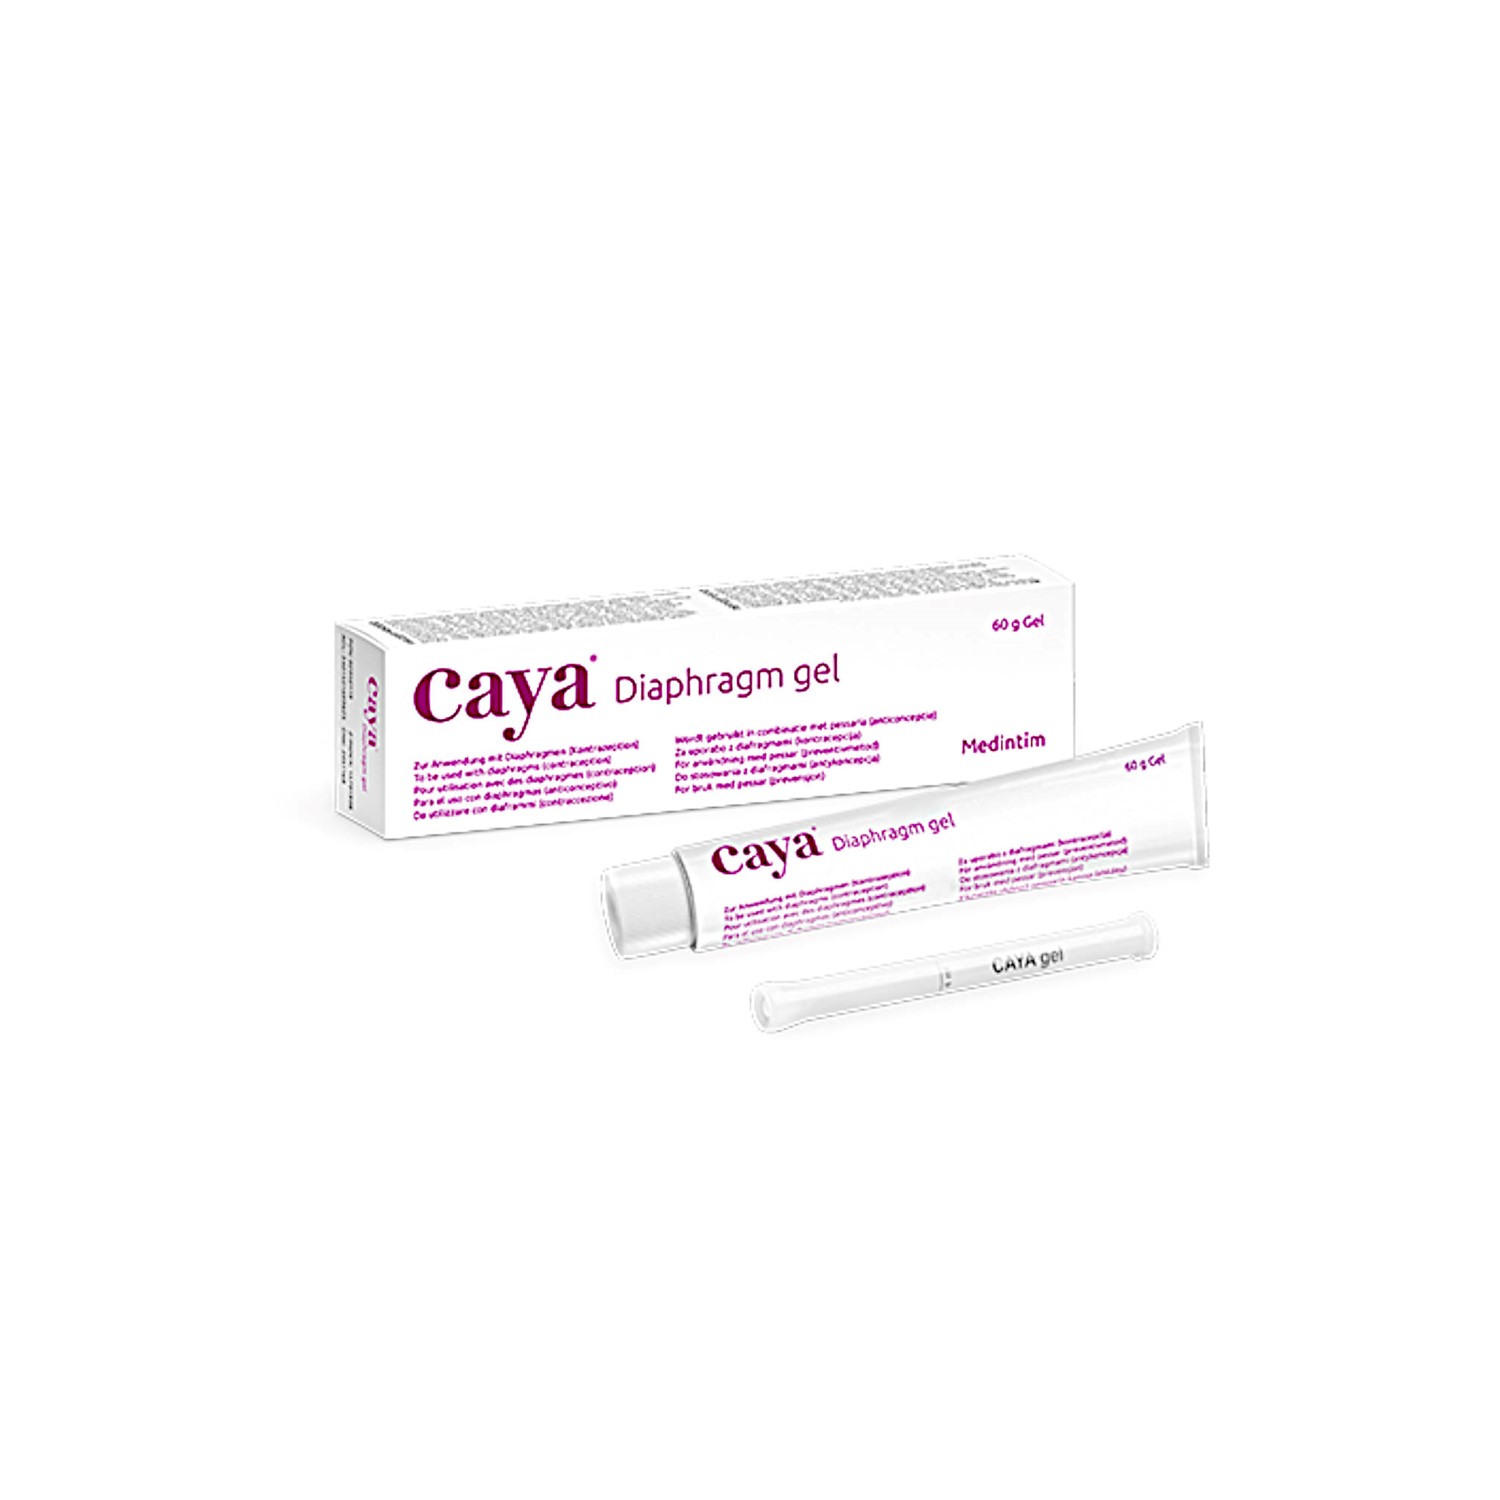 Αντισυλληπτική Σπερματοκτόνη γέλη Caya gel για χρήση με το διάφραγμα Caya